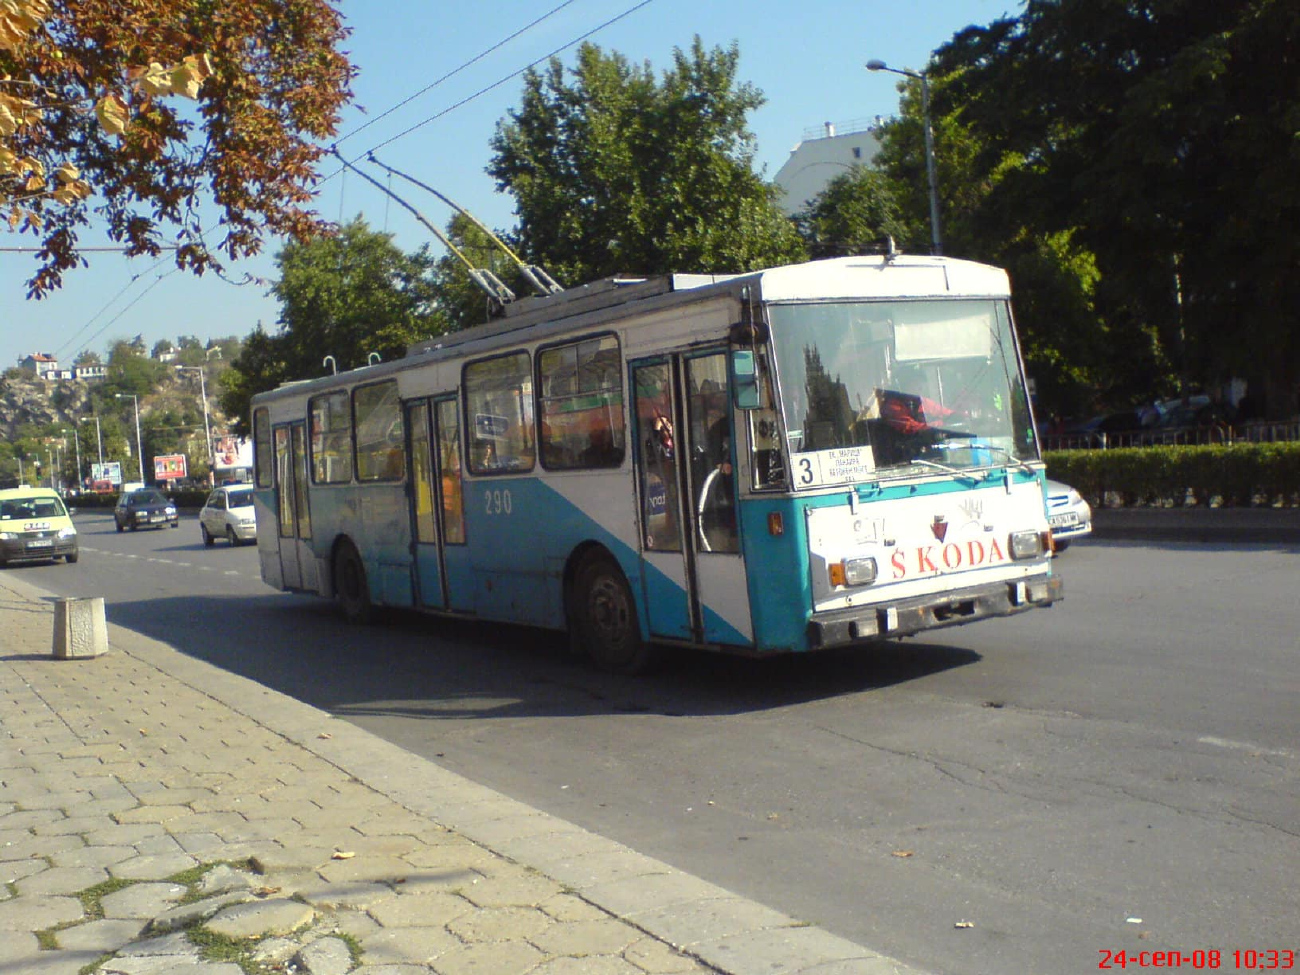 Пловдив, Škoda 14Tr01 № 290; Пловдив — Исторически снимки — Тролейбуси • Исторические фотографии — Троллейбусов